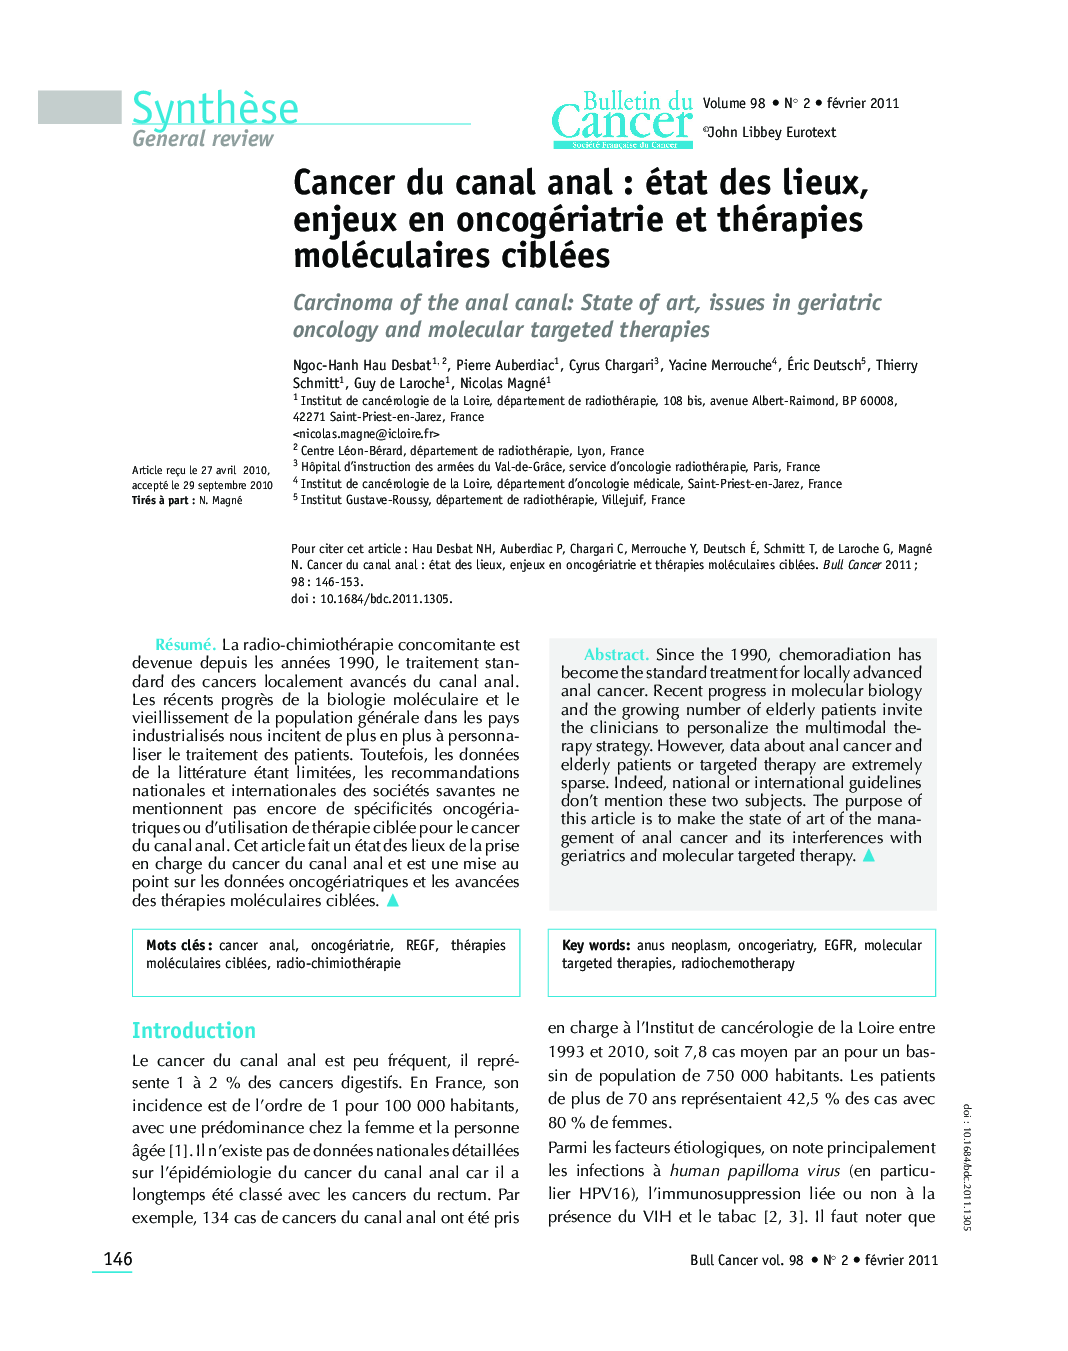 Cancer du canal anal : état des lieux, enjeux en oncogériatrie et thérapies moléculaires ciblées